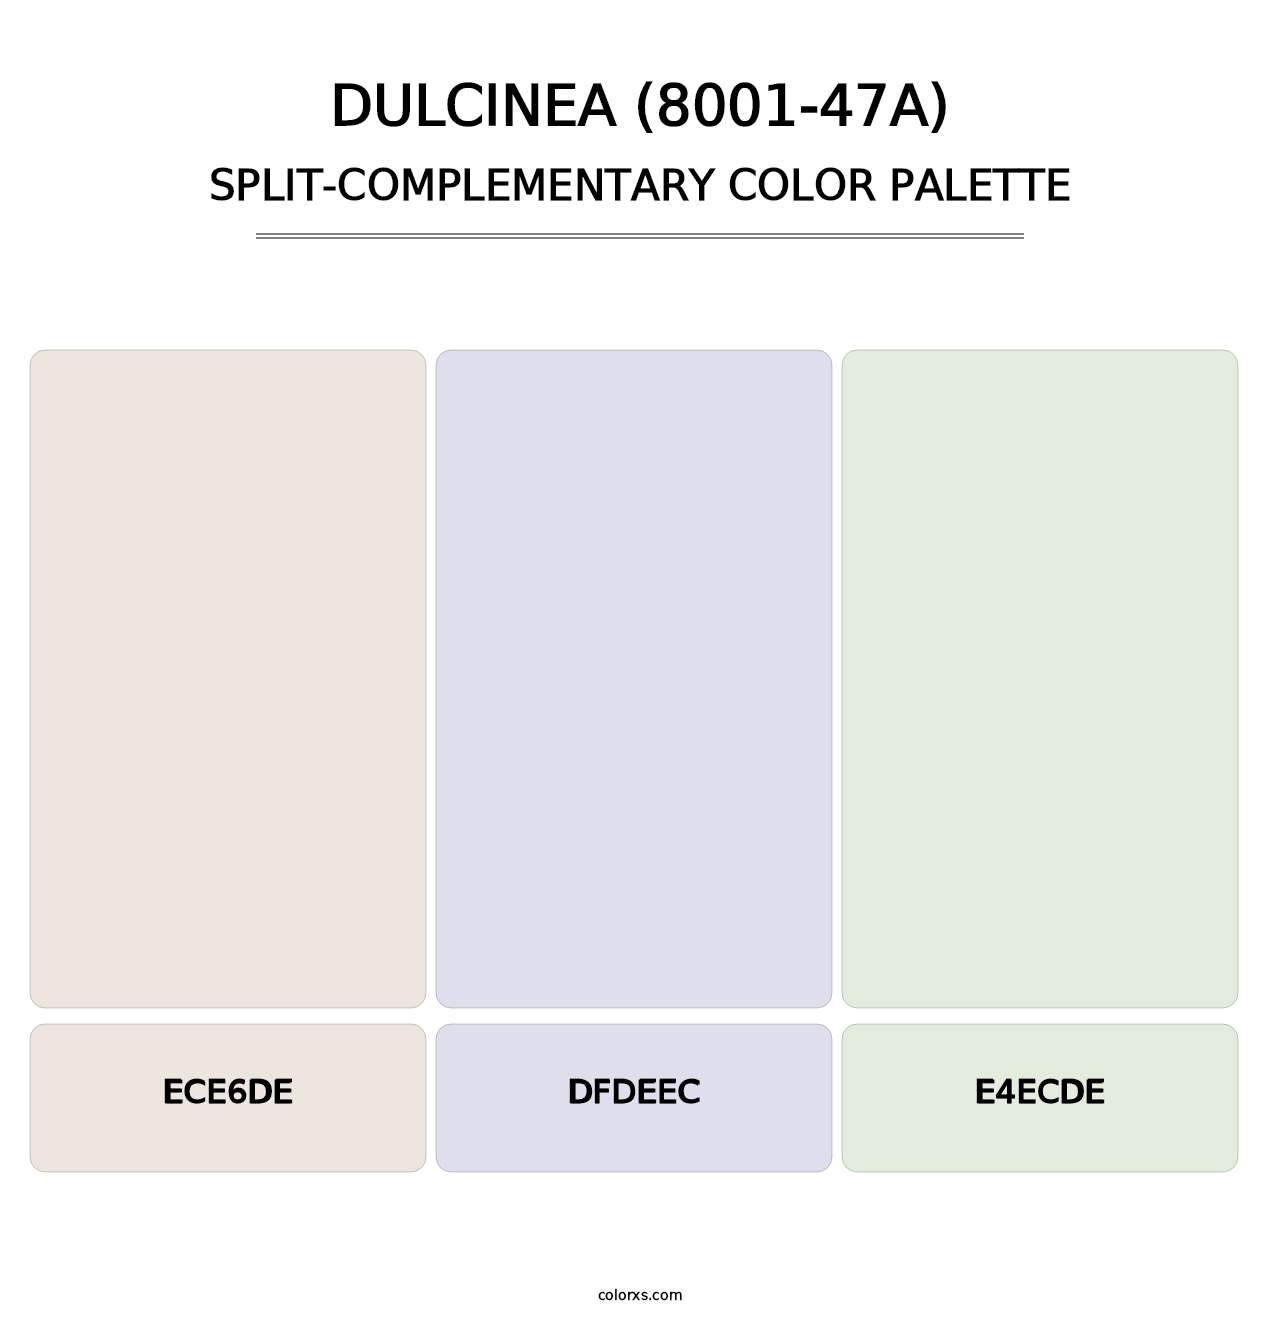 Dulcinea (8001-47A) - Split-Complementary Color Palette